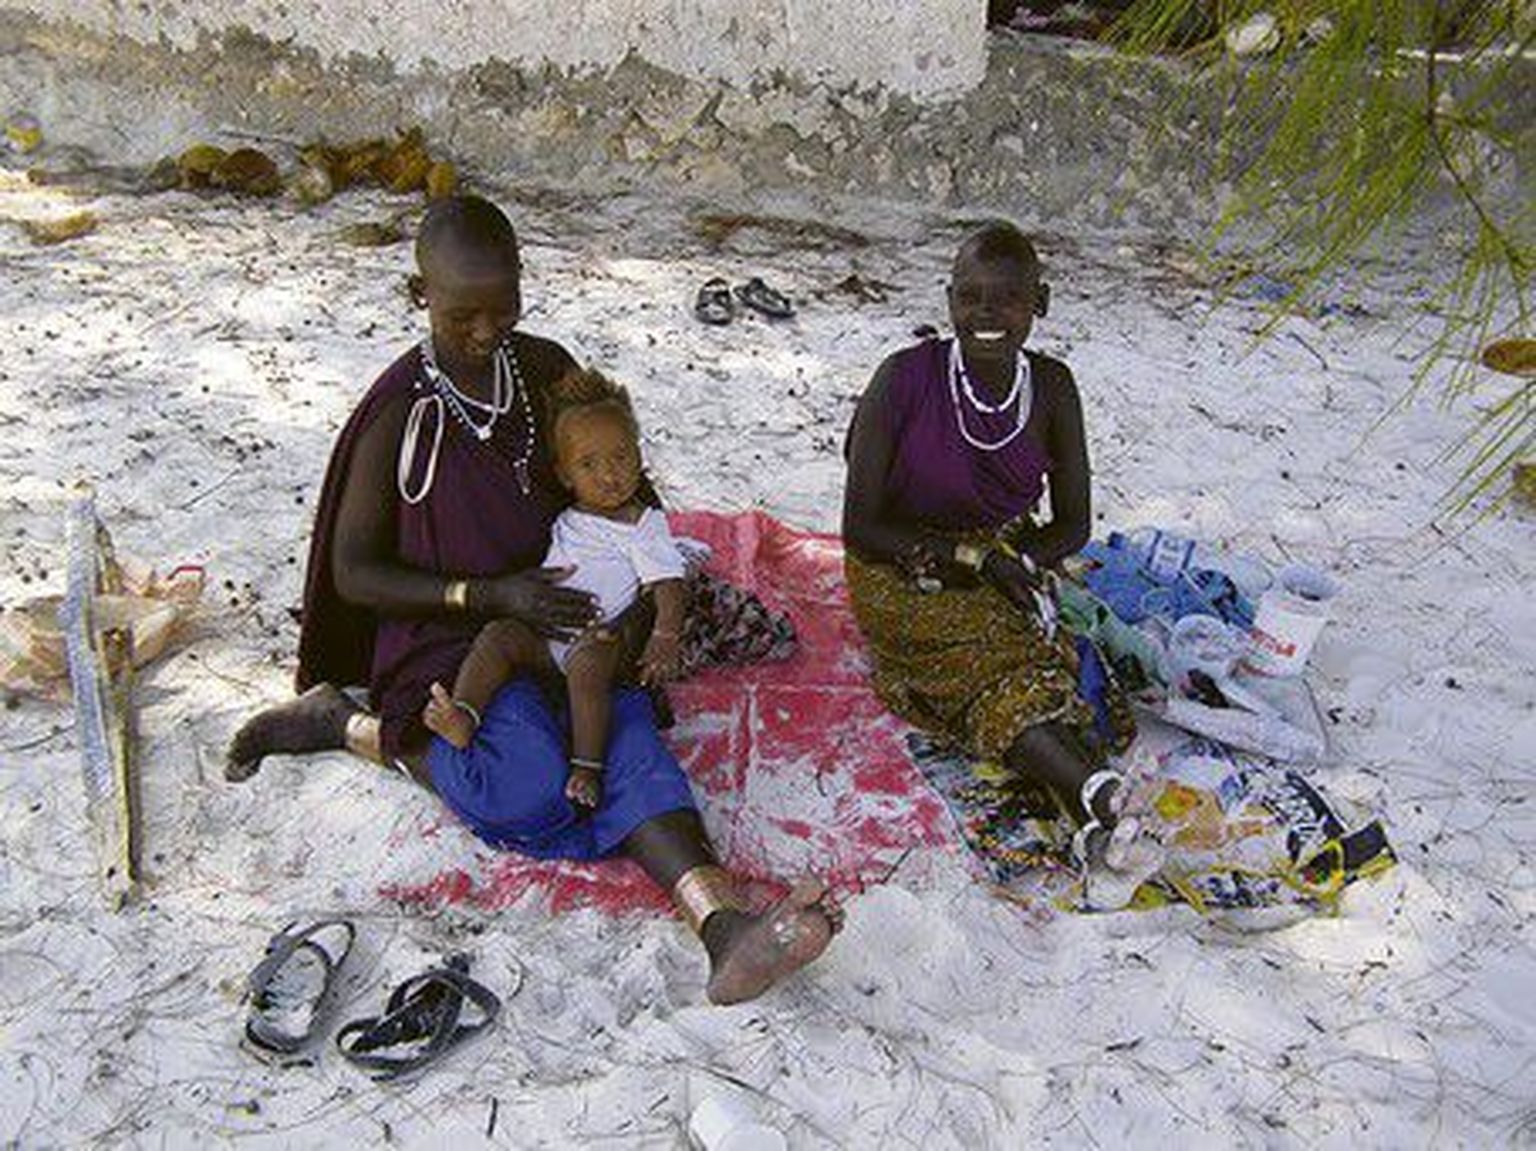 Masai naised tulevad mandrilt saarele oma käsitööd müüma.